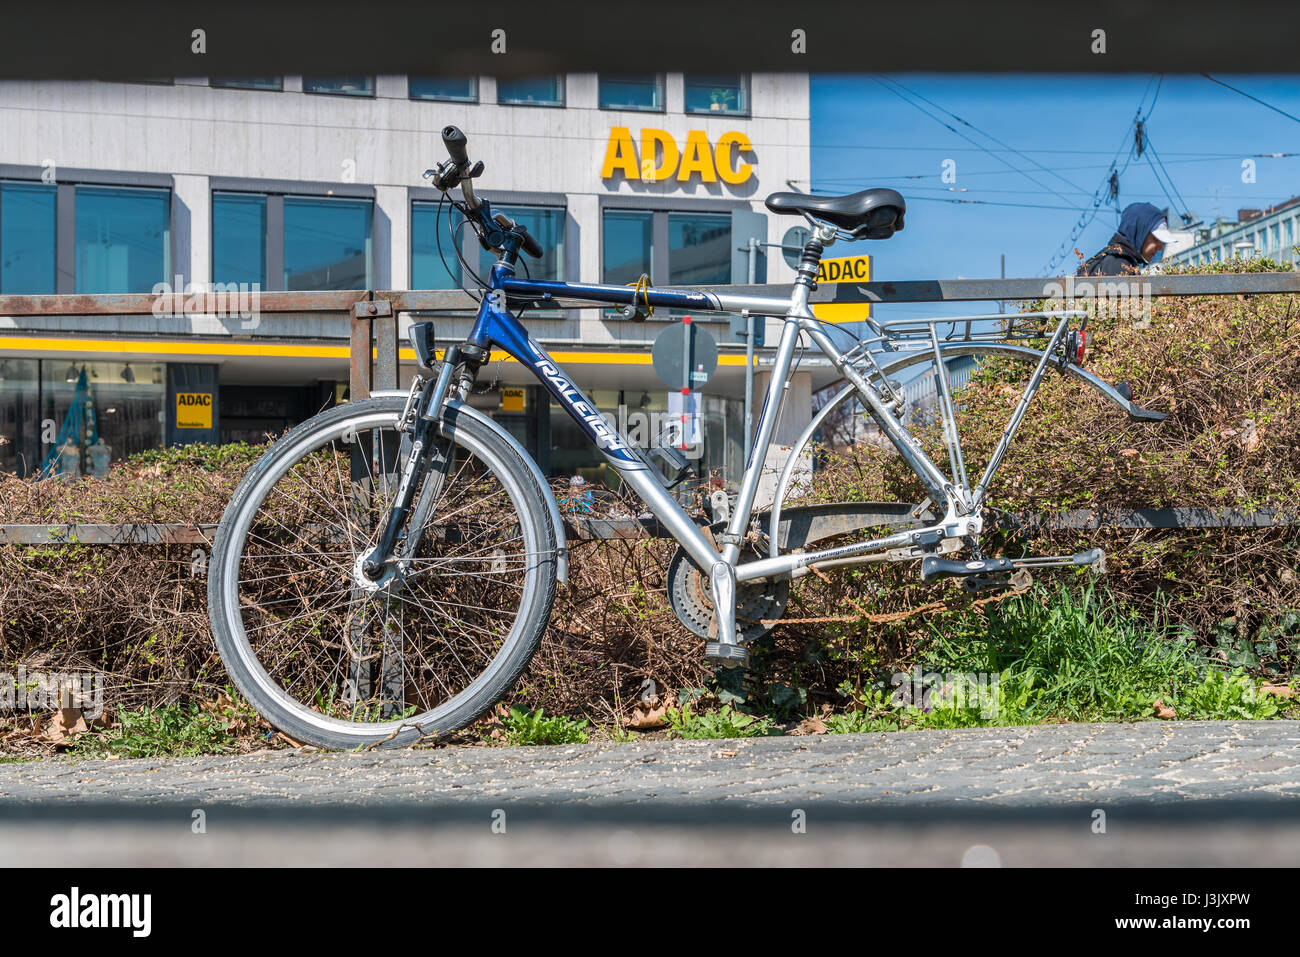 Germania - Monaco, 25 marzo 2017, uno rotto in bicicletta in Monaco di Baviera senza pneumatico posteriore con ADAC Sign in background Foto Stock